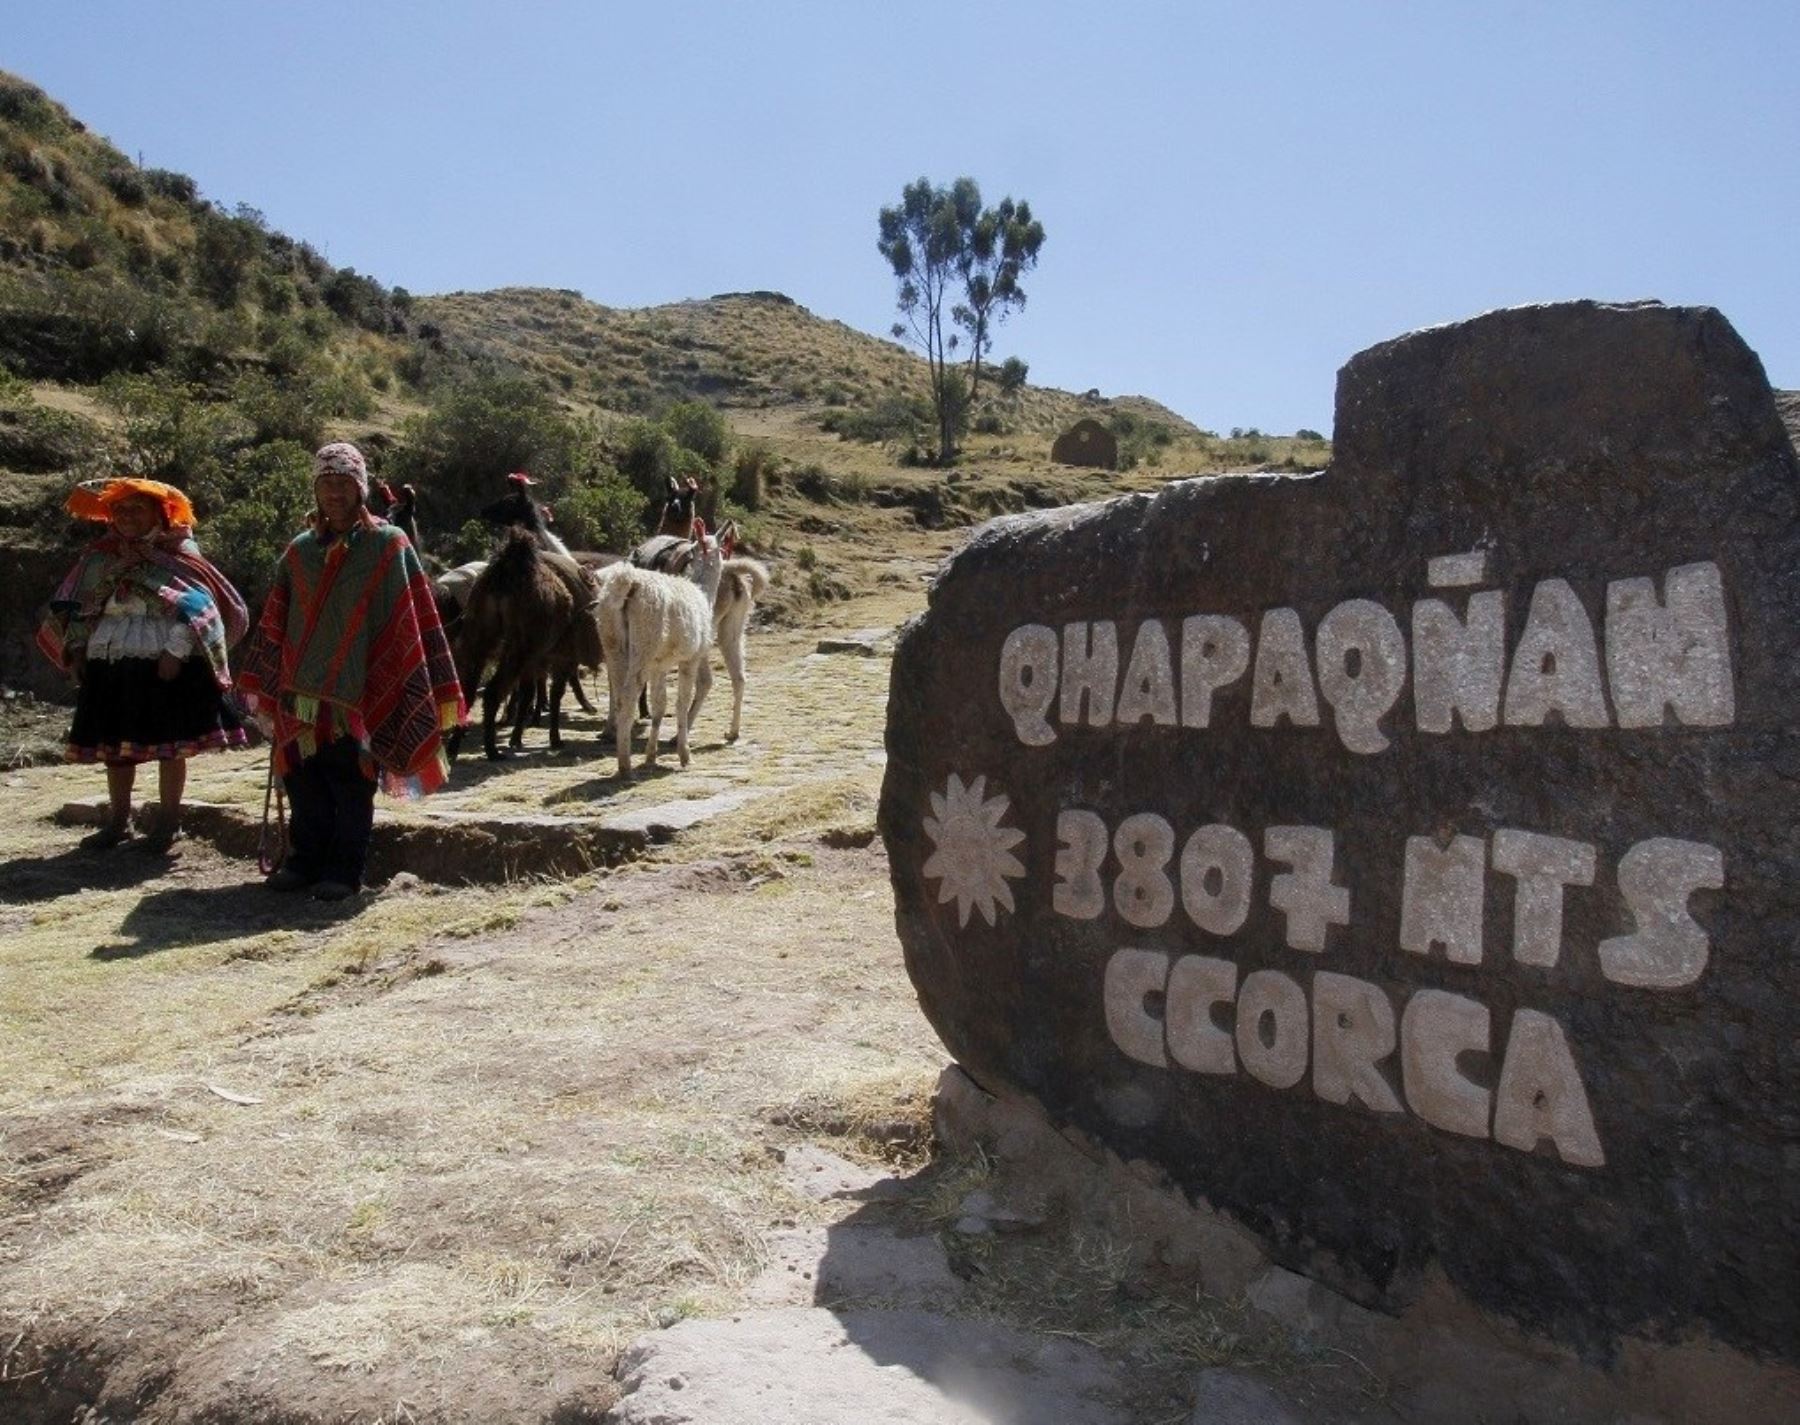 El distrito de Ccorcca, región Cusco, promociona ruta turística en camino inca al Contisuyo con novedosos atractivos y espera el arribo de un gran número de visitantes durante el feriado largo por Fiestas Patrias.